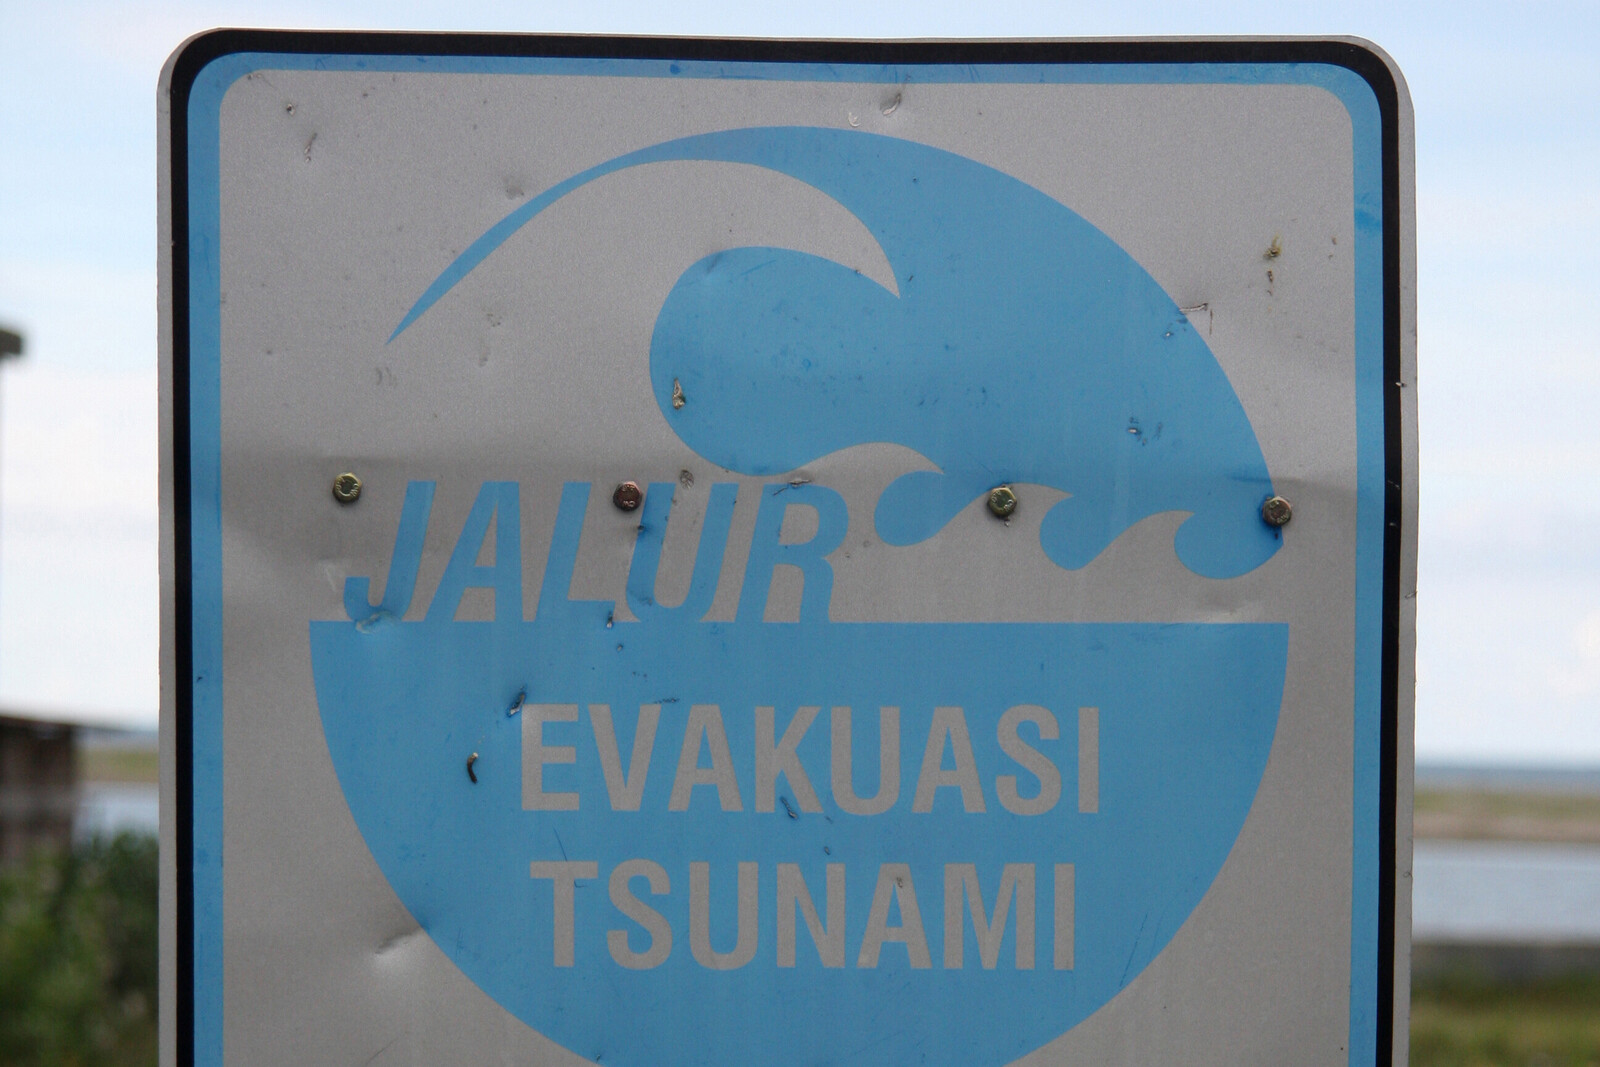 Oft bleiben nur wenige Minuten, um sich vor einem Tsumani in Sicherheit zu bringen. Schilder weisen den schnellsten Fluchtweg hin.